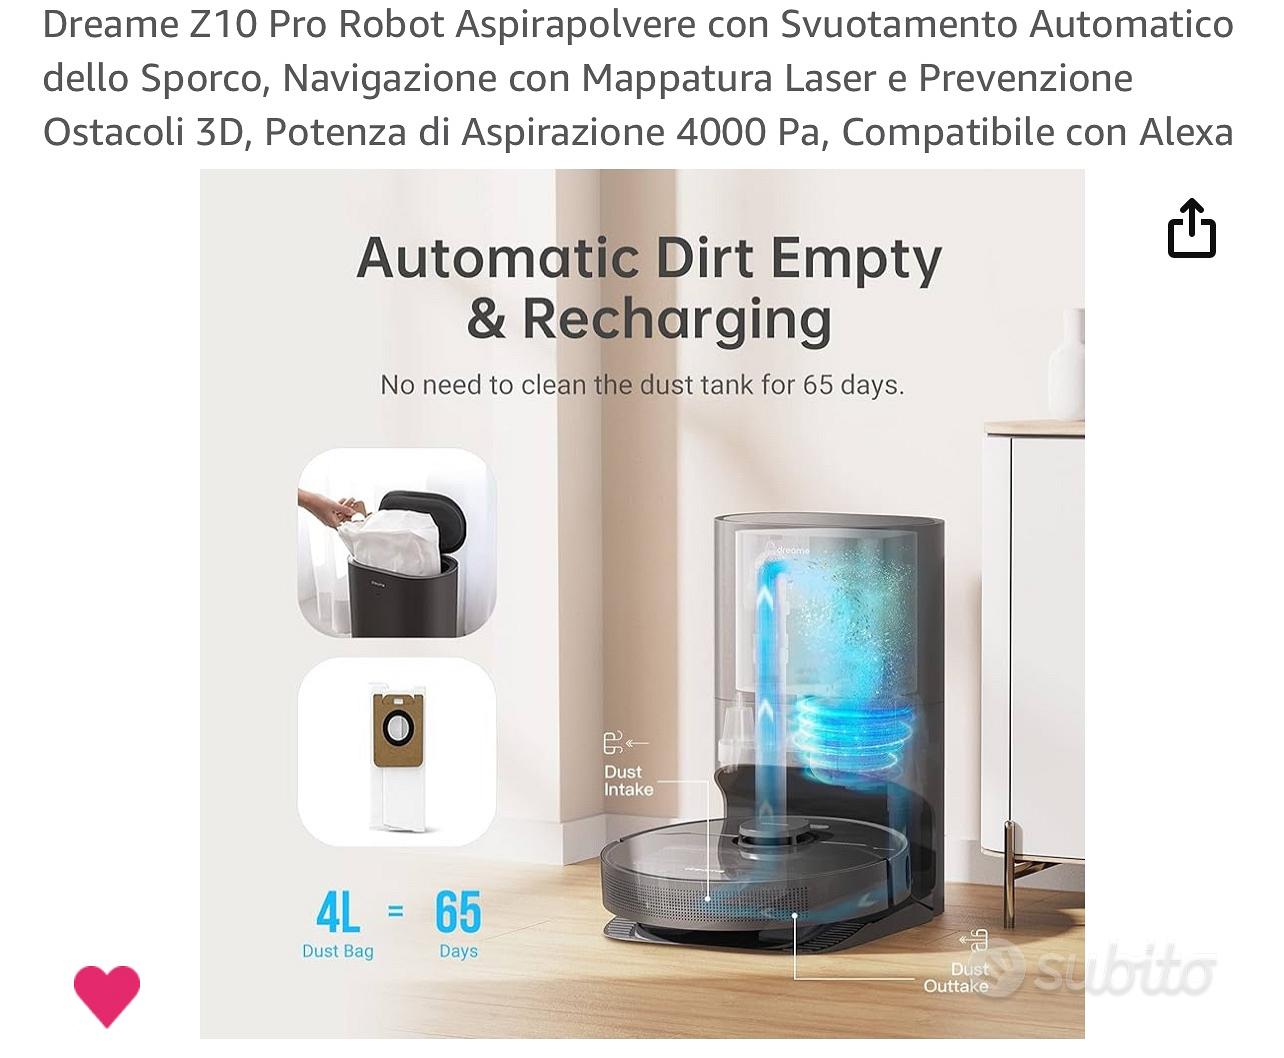 Dreame z10 Pro Robot Aspirapolvere - Elettrodomestici In vendita a Mantova